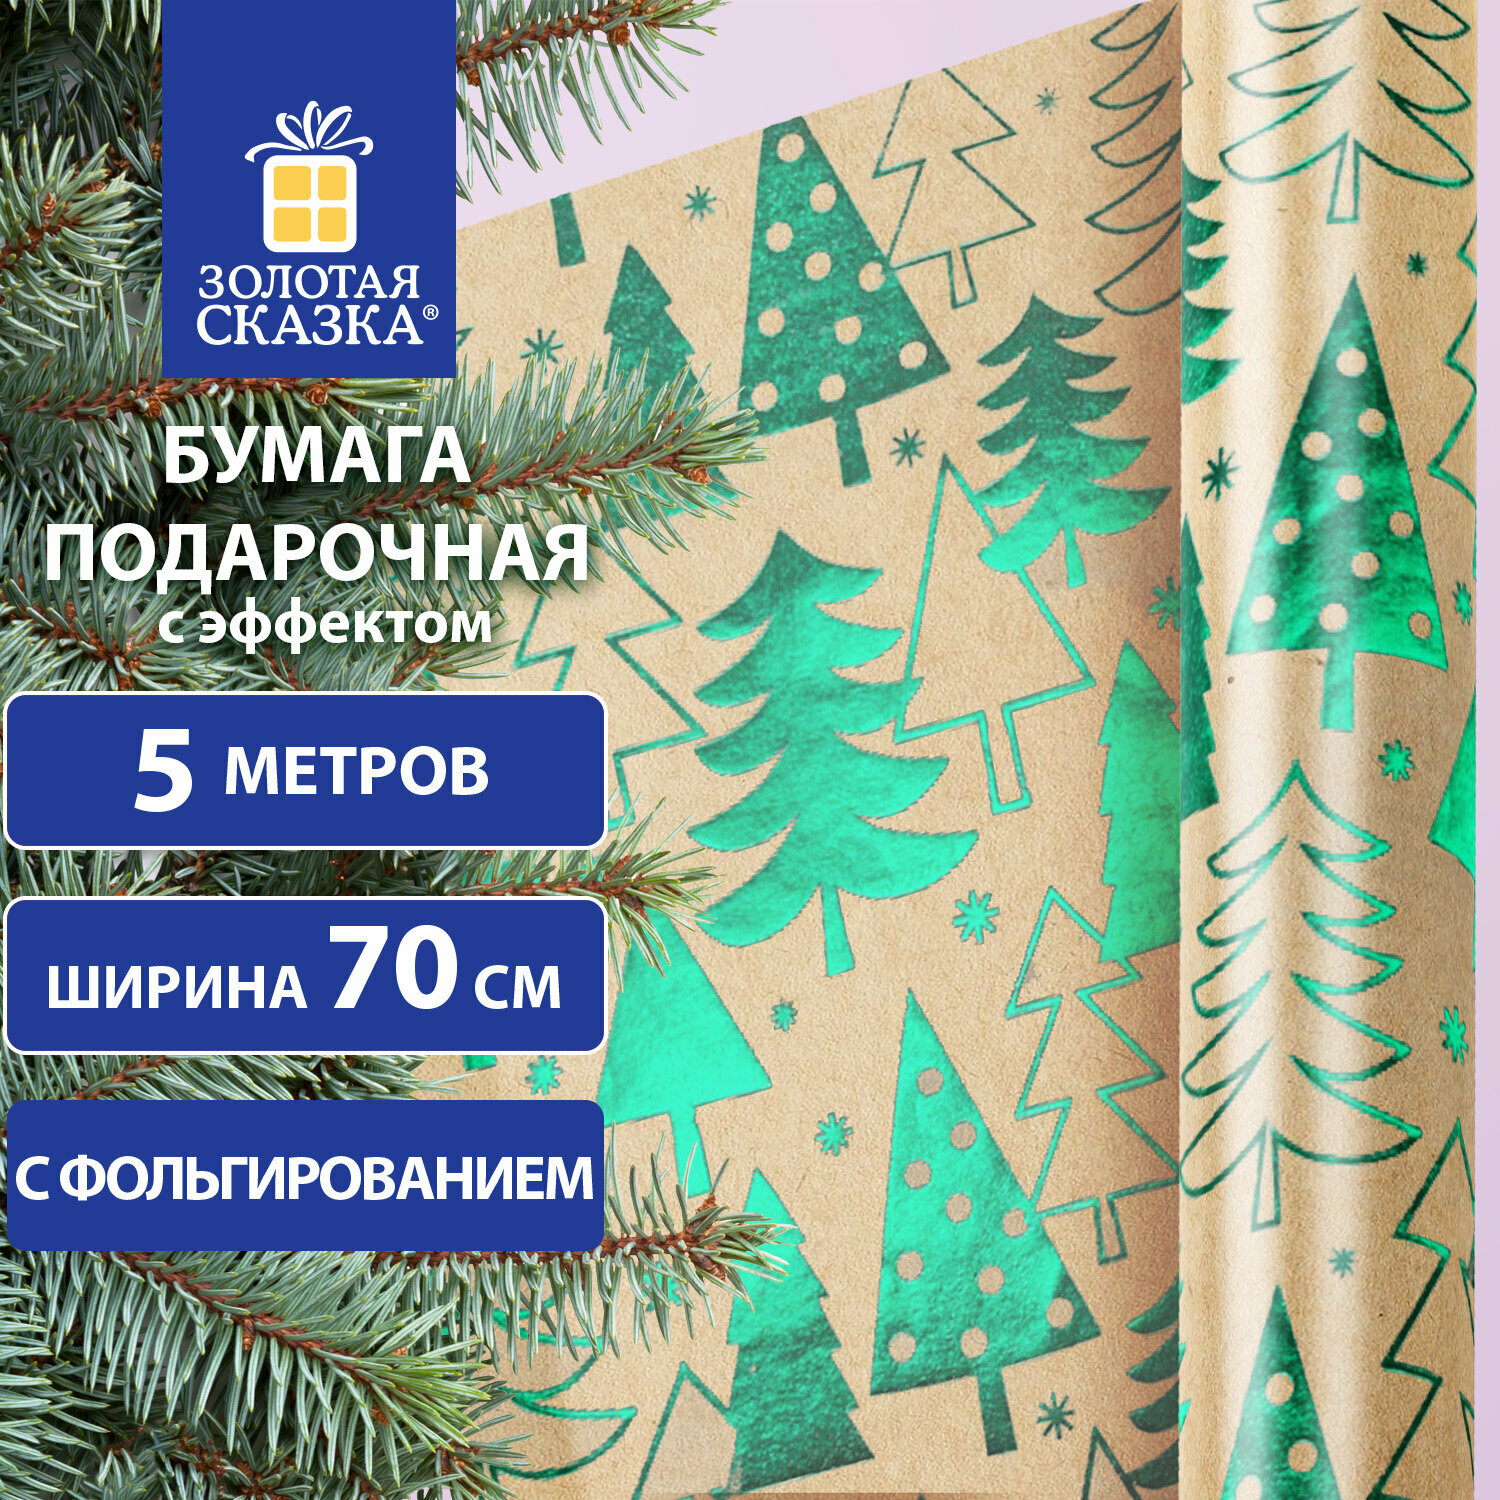 Бумага упаковочная Золотая сказка с эффектами, Big Size, новогодняя, Green Trees, 0,7х5 м